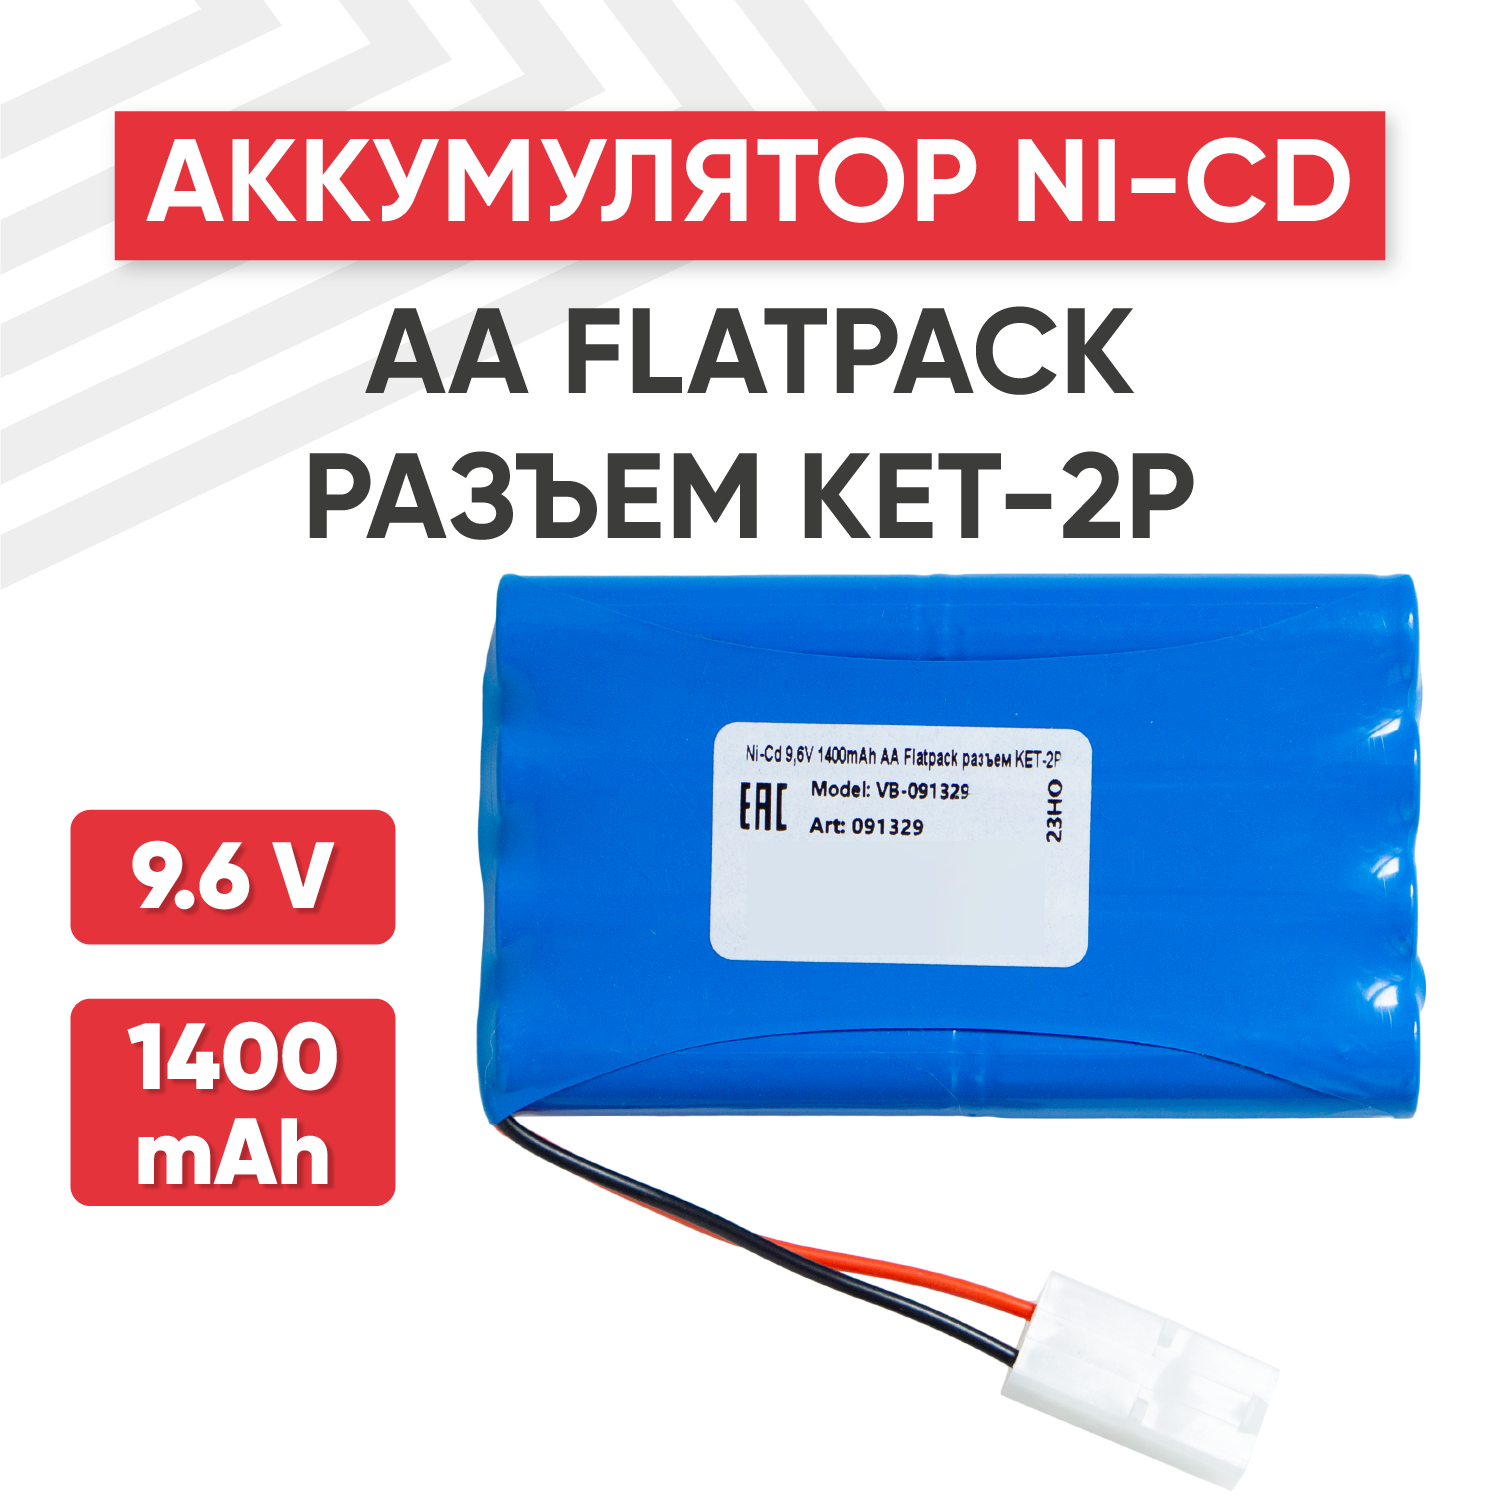 Аккумуляторная батарея (АКБ, аккумулятор) для радиоуправляемых игрушек / моделей, AA Flatpack, разъем KET-2P, 9.6В, 1400мАч, Ni-Cd